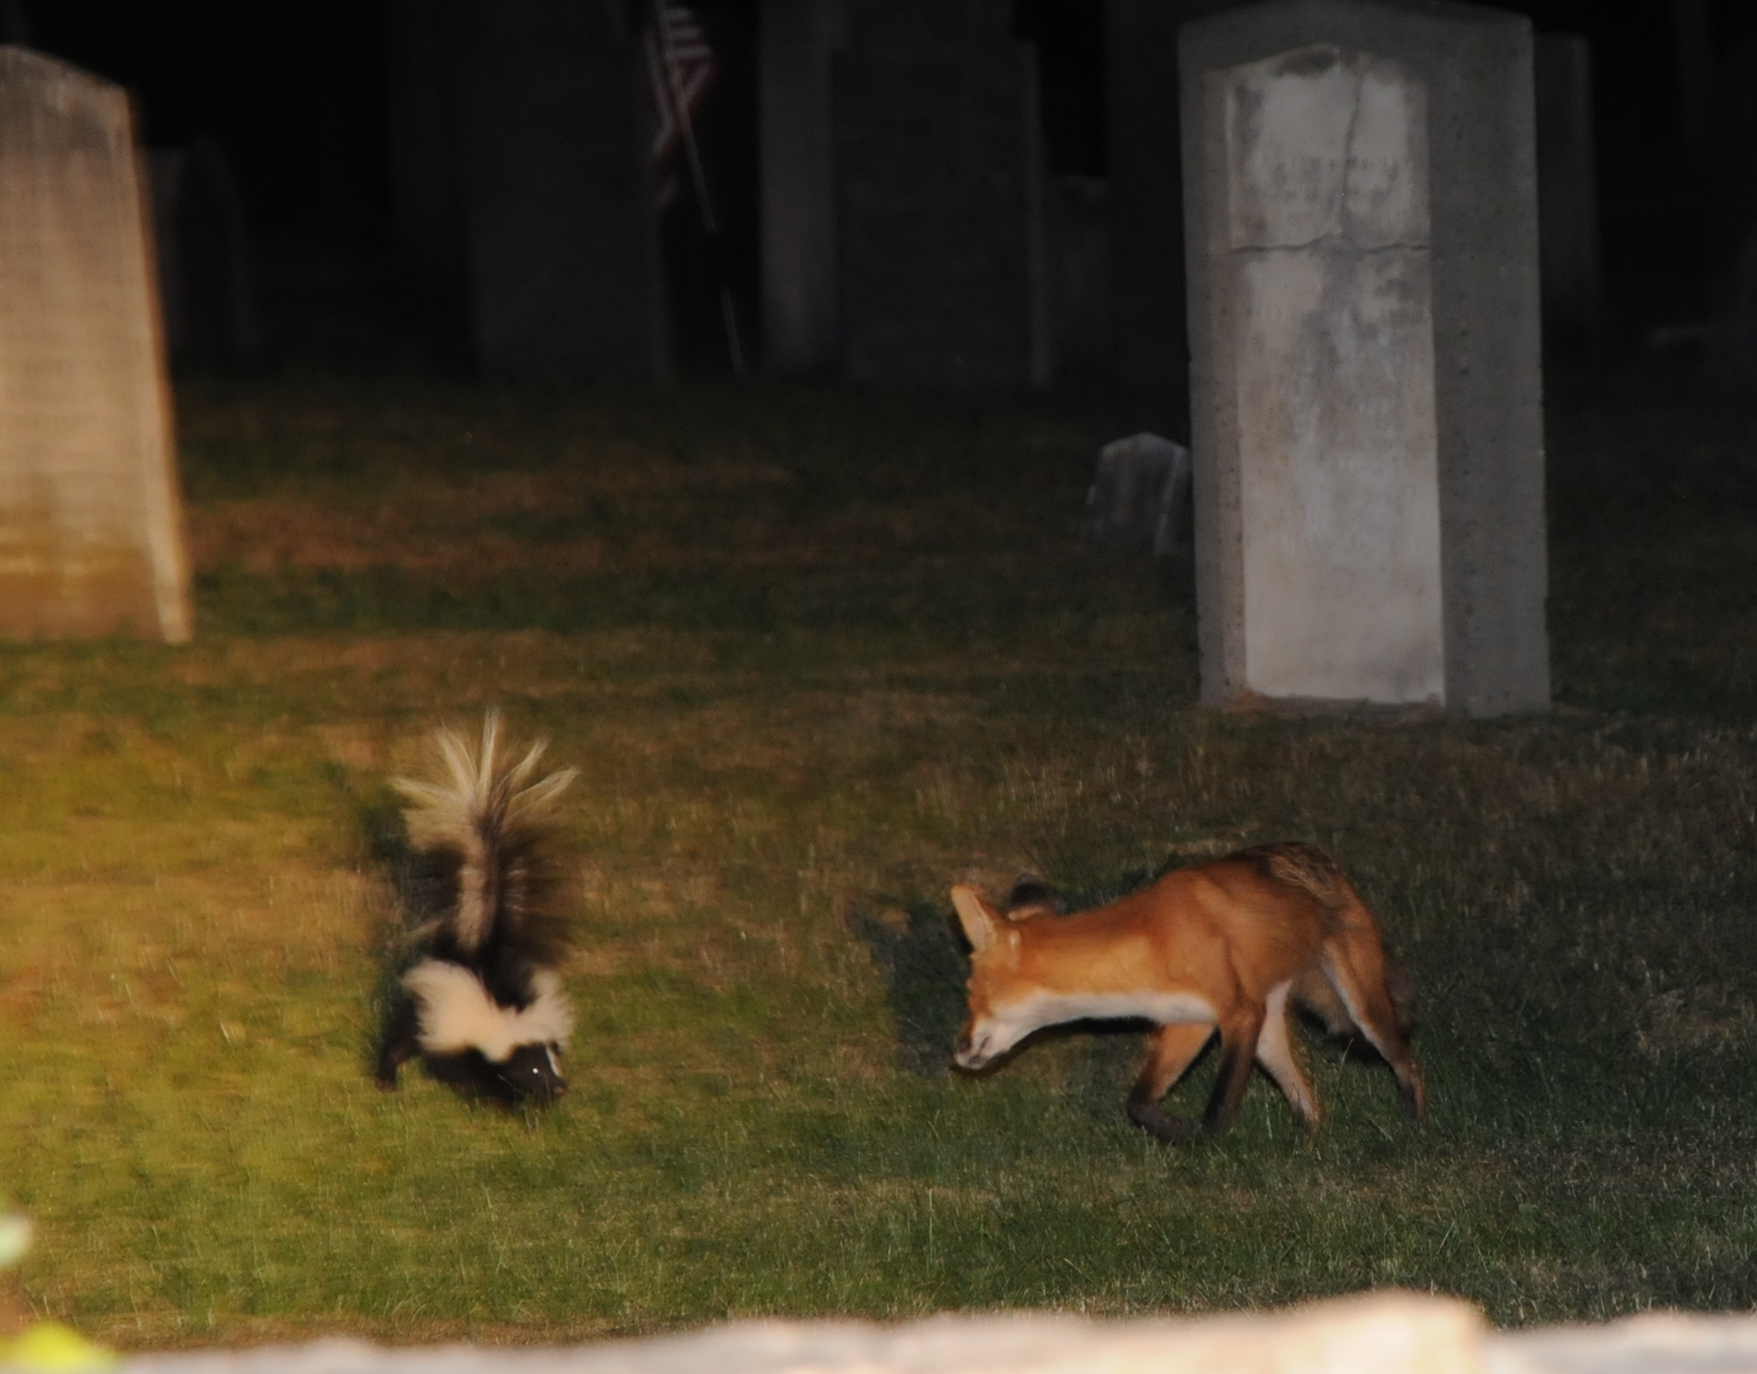 skunk vs fox wellesley ma